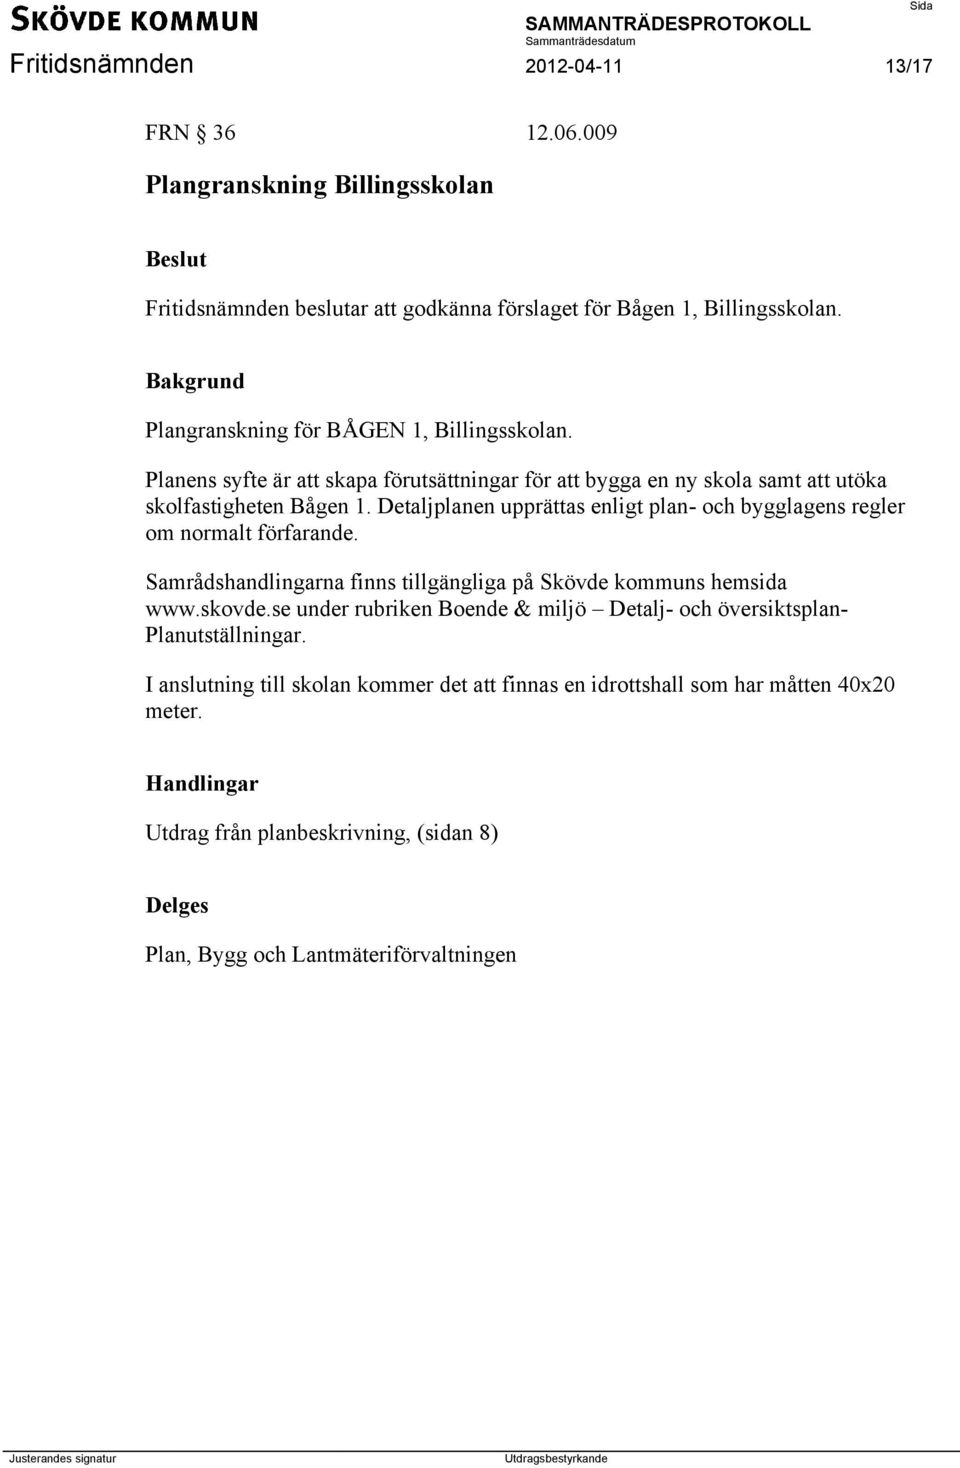 Detaljplanen upprättas enligt plan- och bygglagens regler om normalt förfarande. Samrådshandlingarna finns tillgängliga på Skövde kommuns hemsida www.skovde.